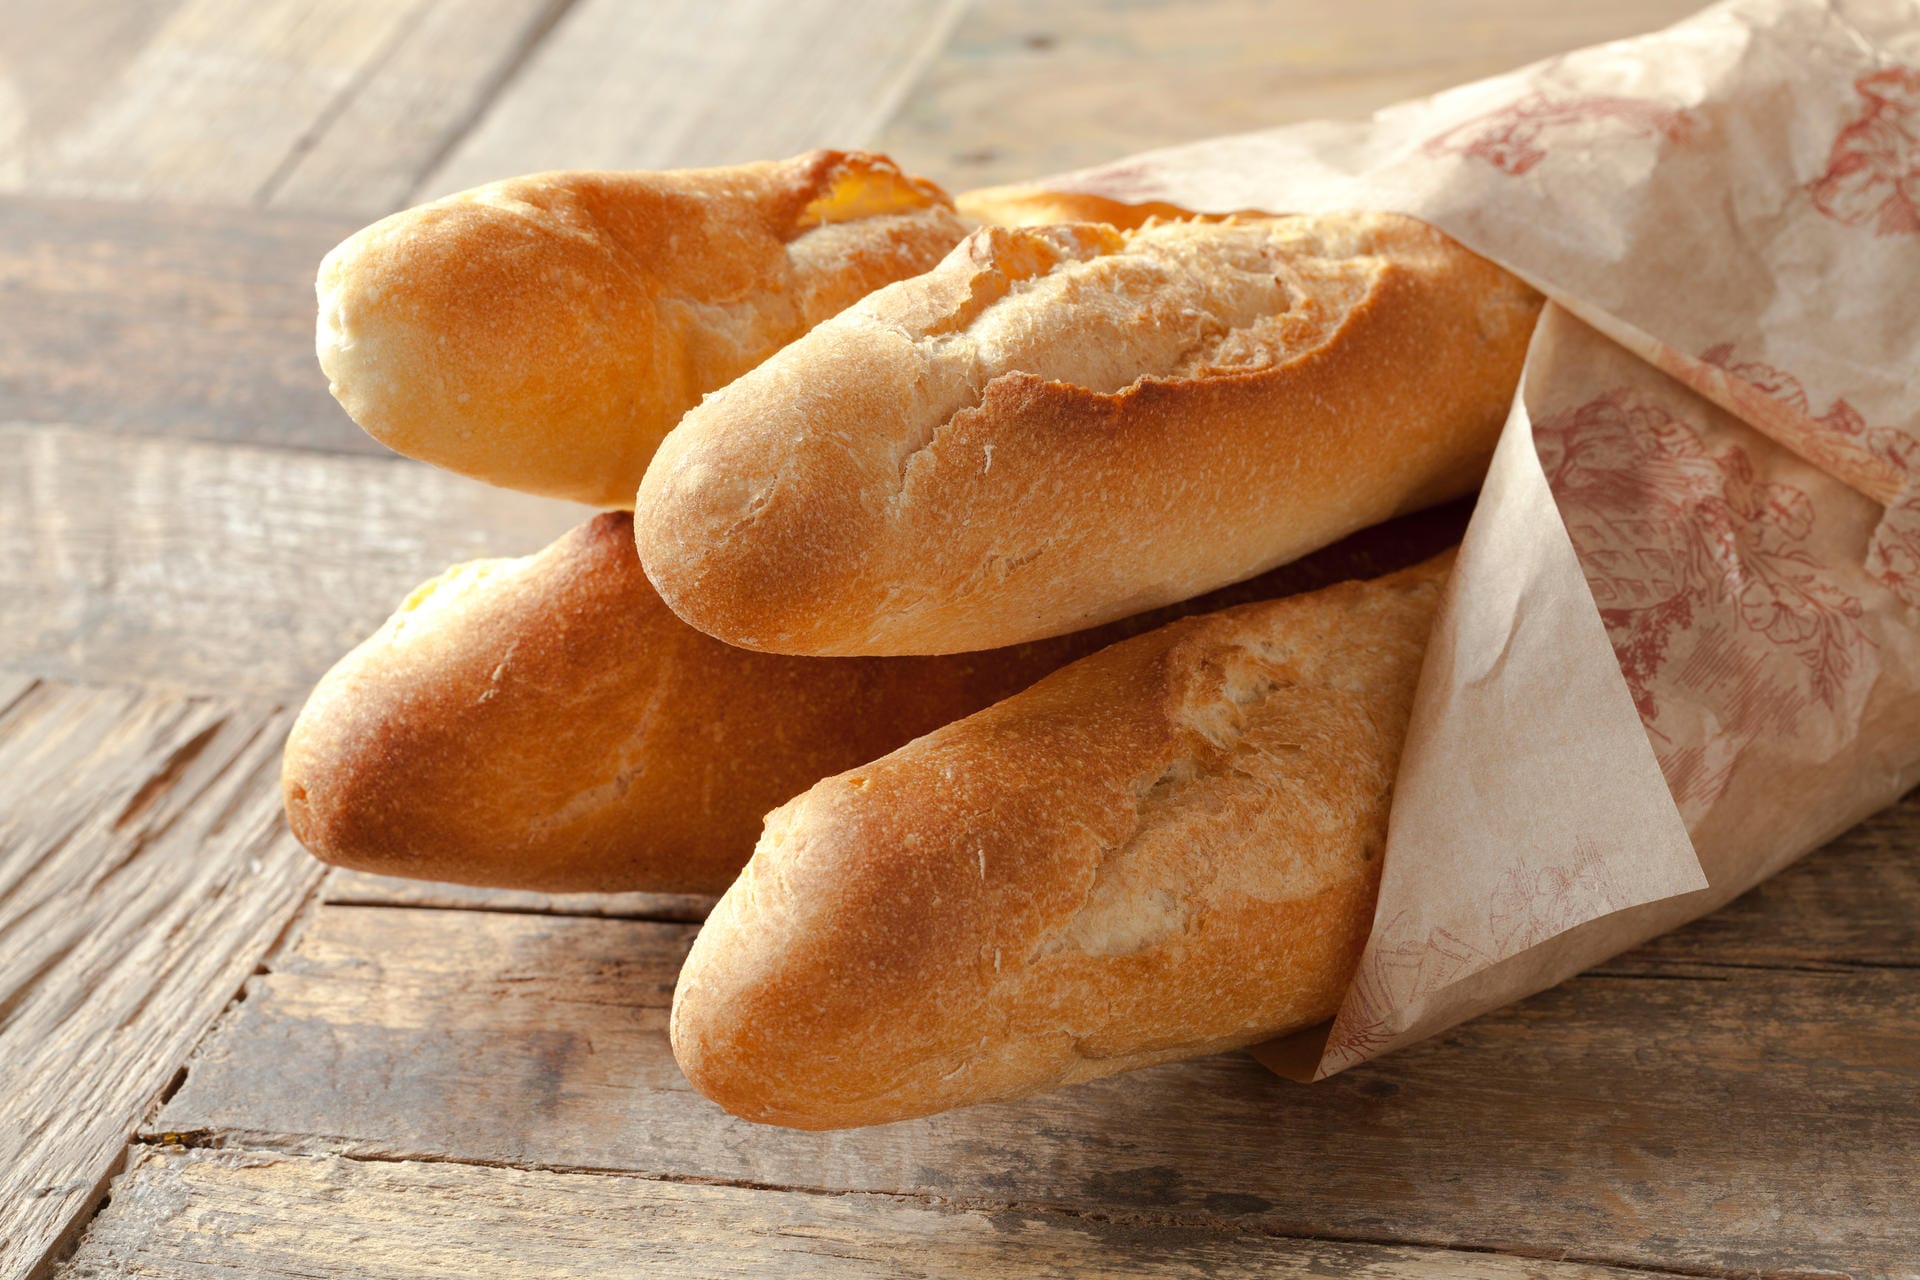 Eine bekannte Brotsorte aus Frankreich ist das Baguette. Bei der traditionellen Variante handelt es sich um Weißbrot, das nicht aus dem Tiefkühler stammt.